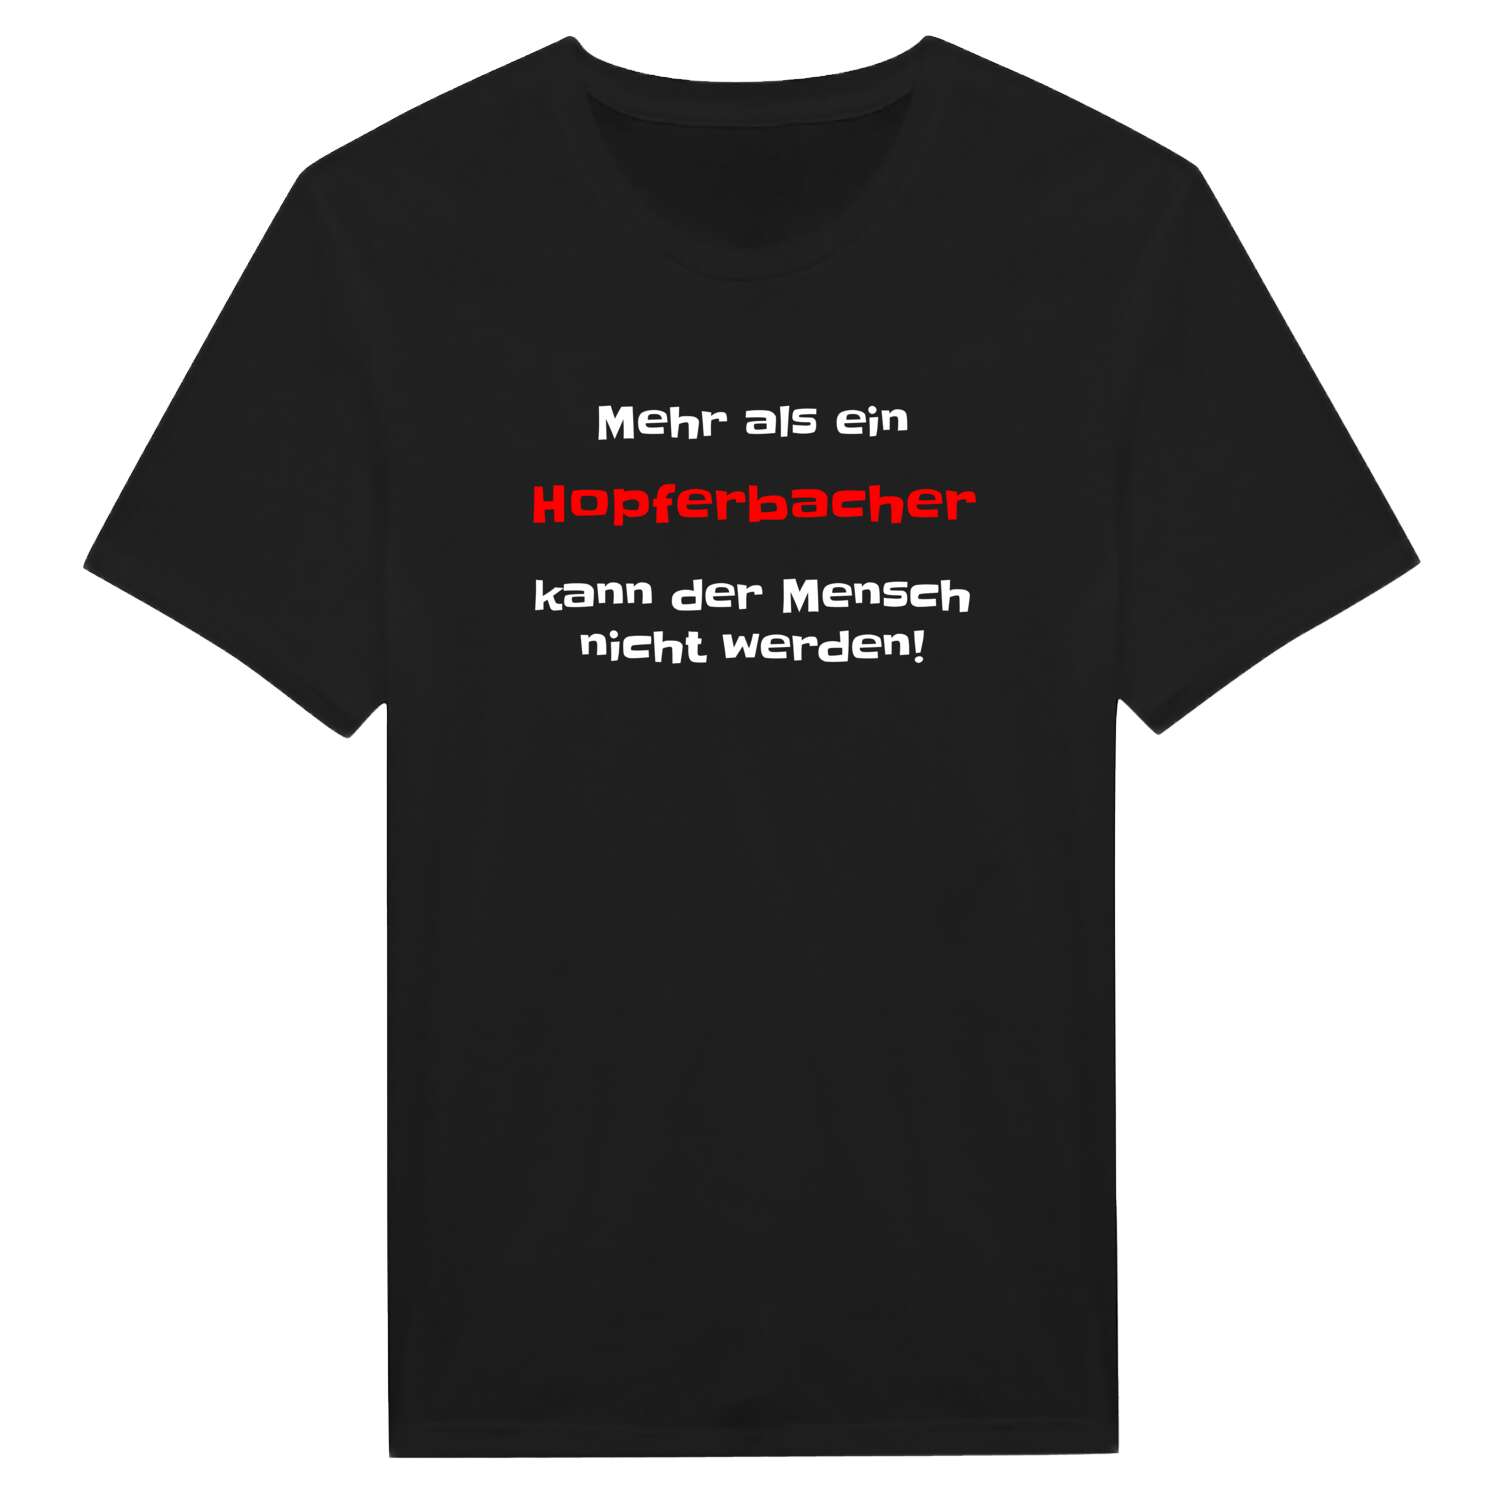 Hopferbach T-Shirt »Mehr als ein«